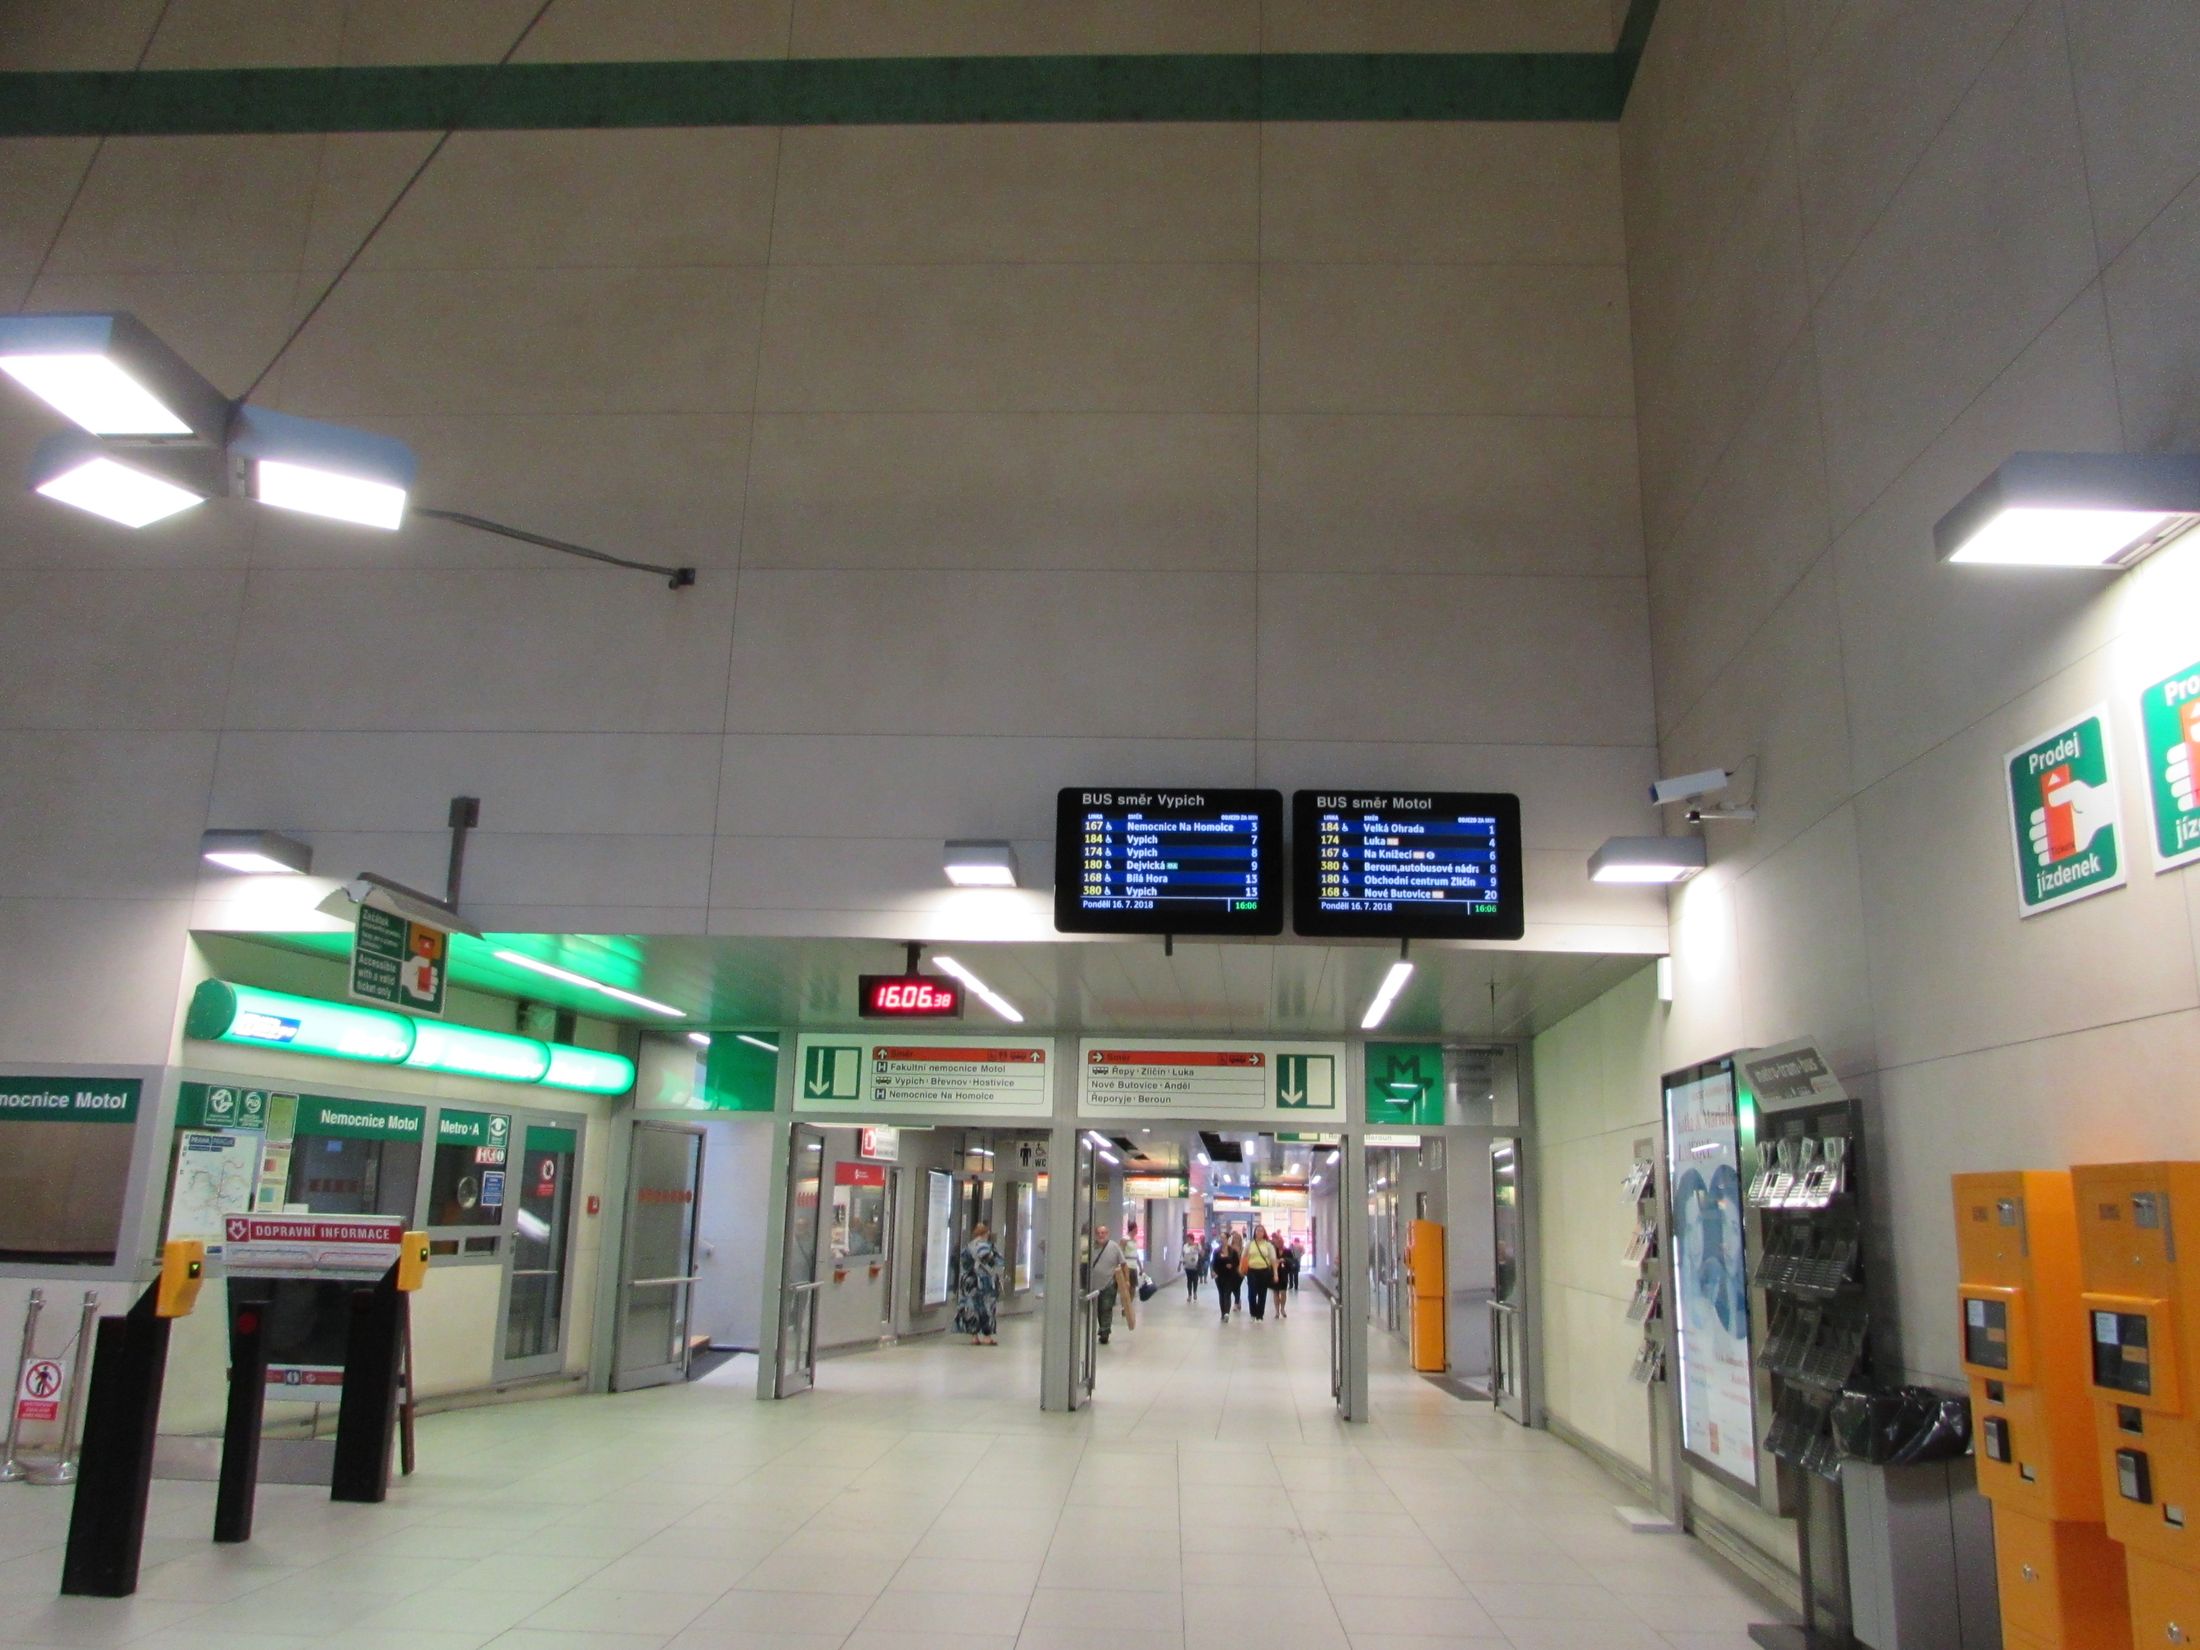 Vestibul metra v suterénu a za dveřmi podchod k Nemocnici Motol